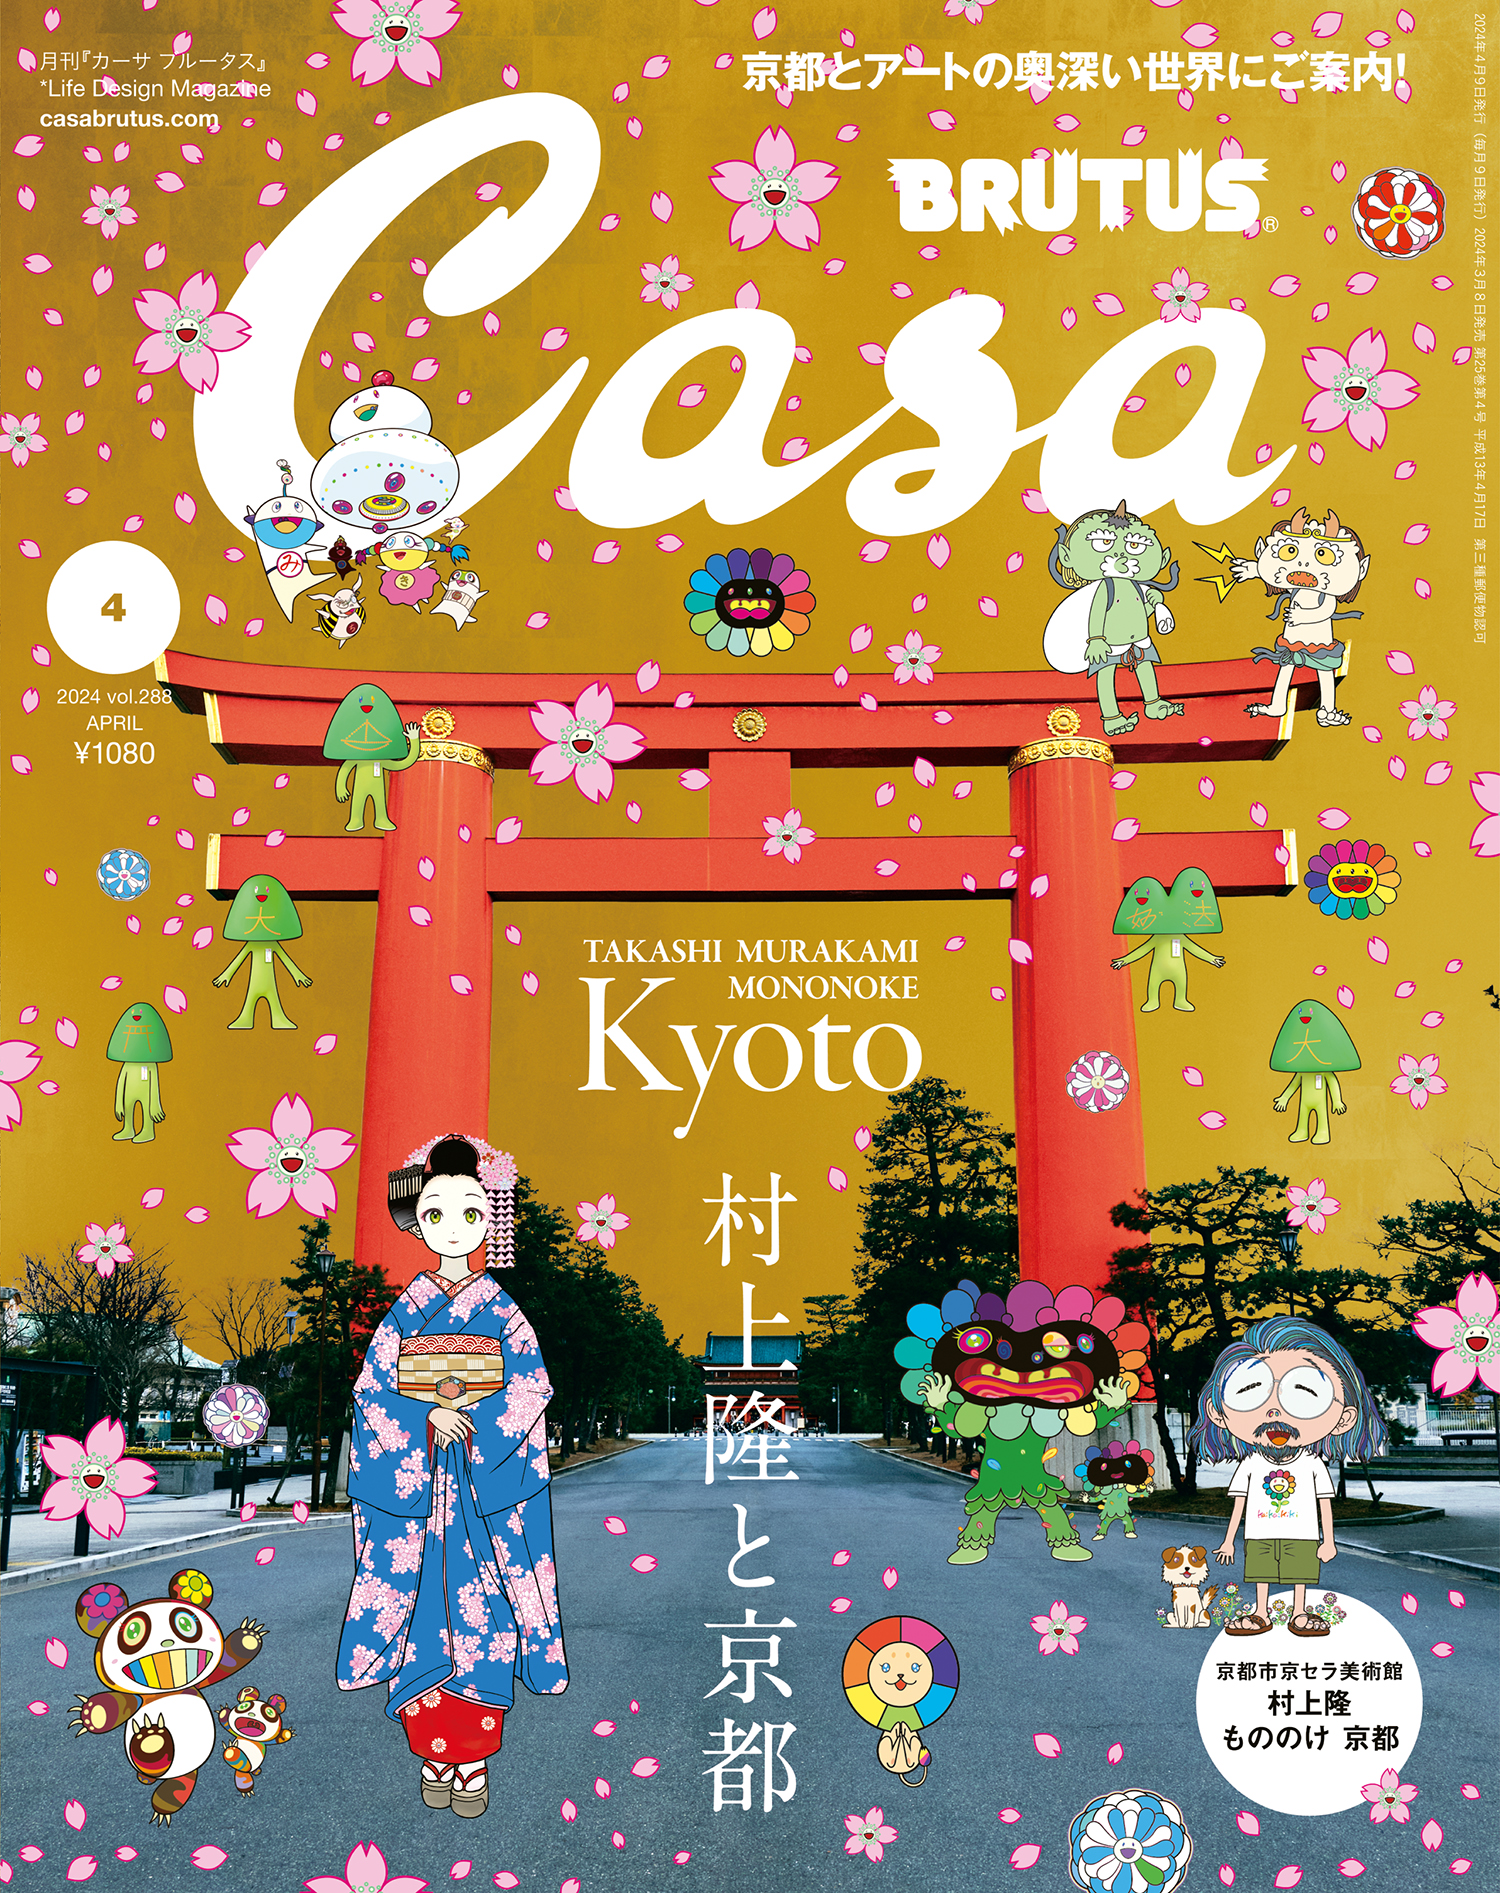 春の京都の舞妓さん 村上隆 もののけ京都 カード未開封 Casa BRUTUS 